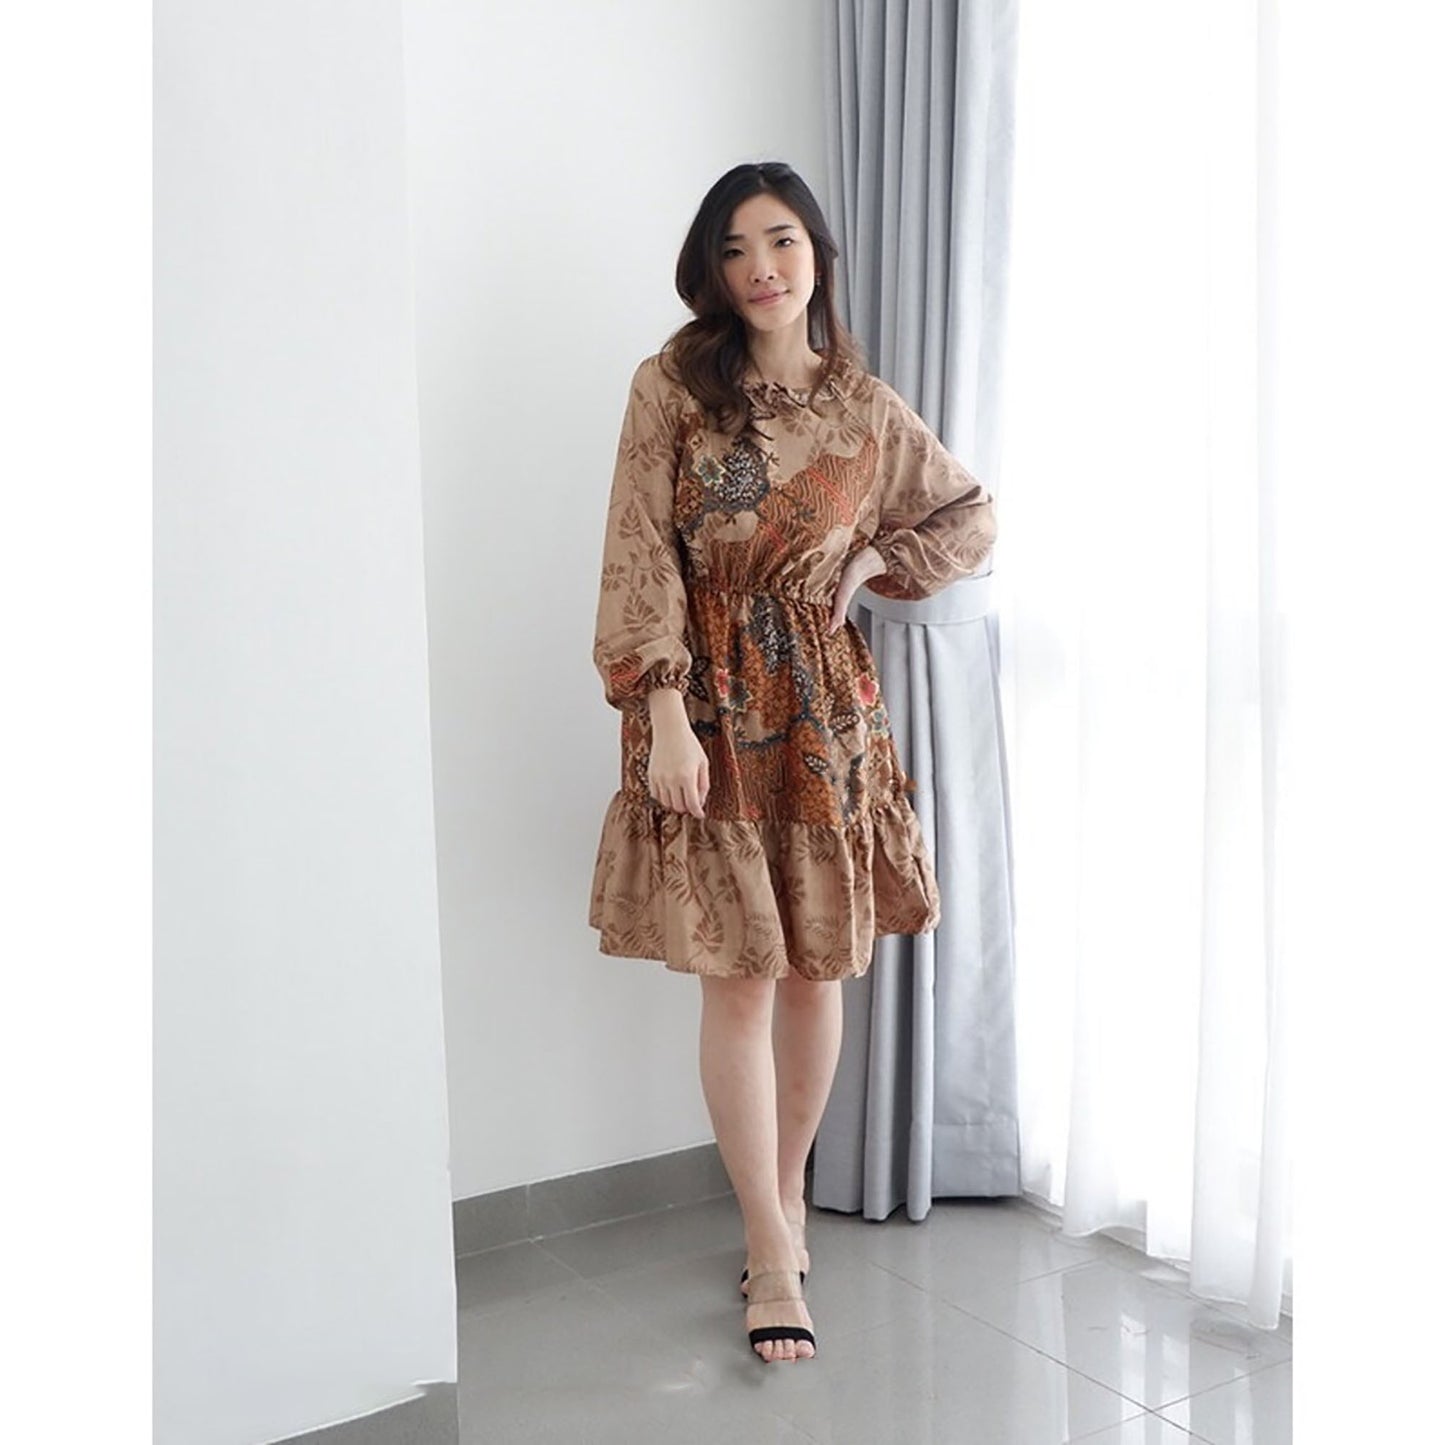 Waldy Batik Dress Jothelabel, Batik Dress, Batik, Boho Dress, Bohemian Dress, Ethnic Dress